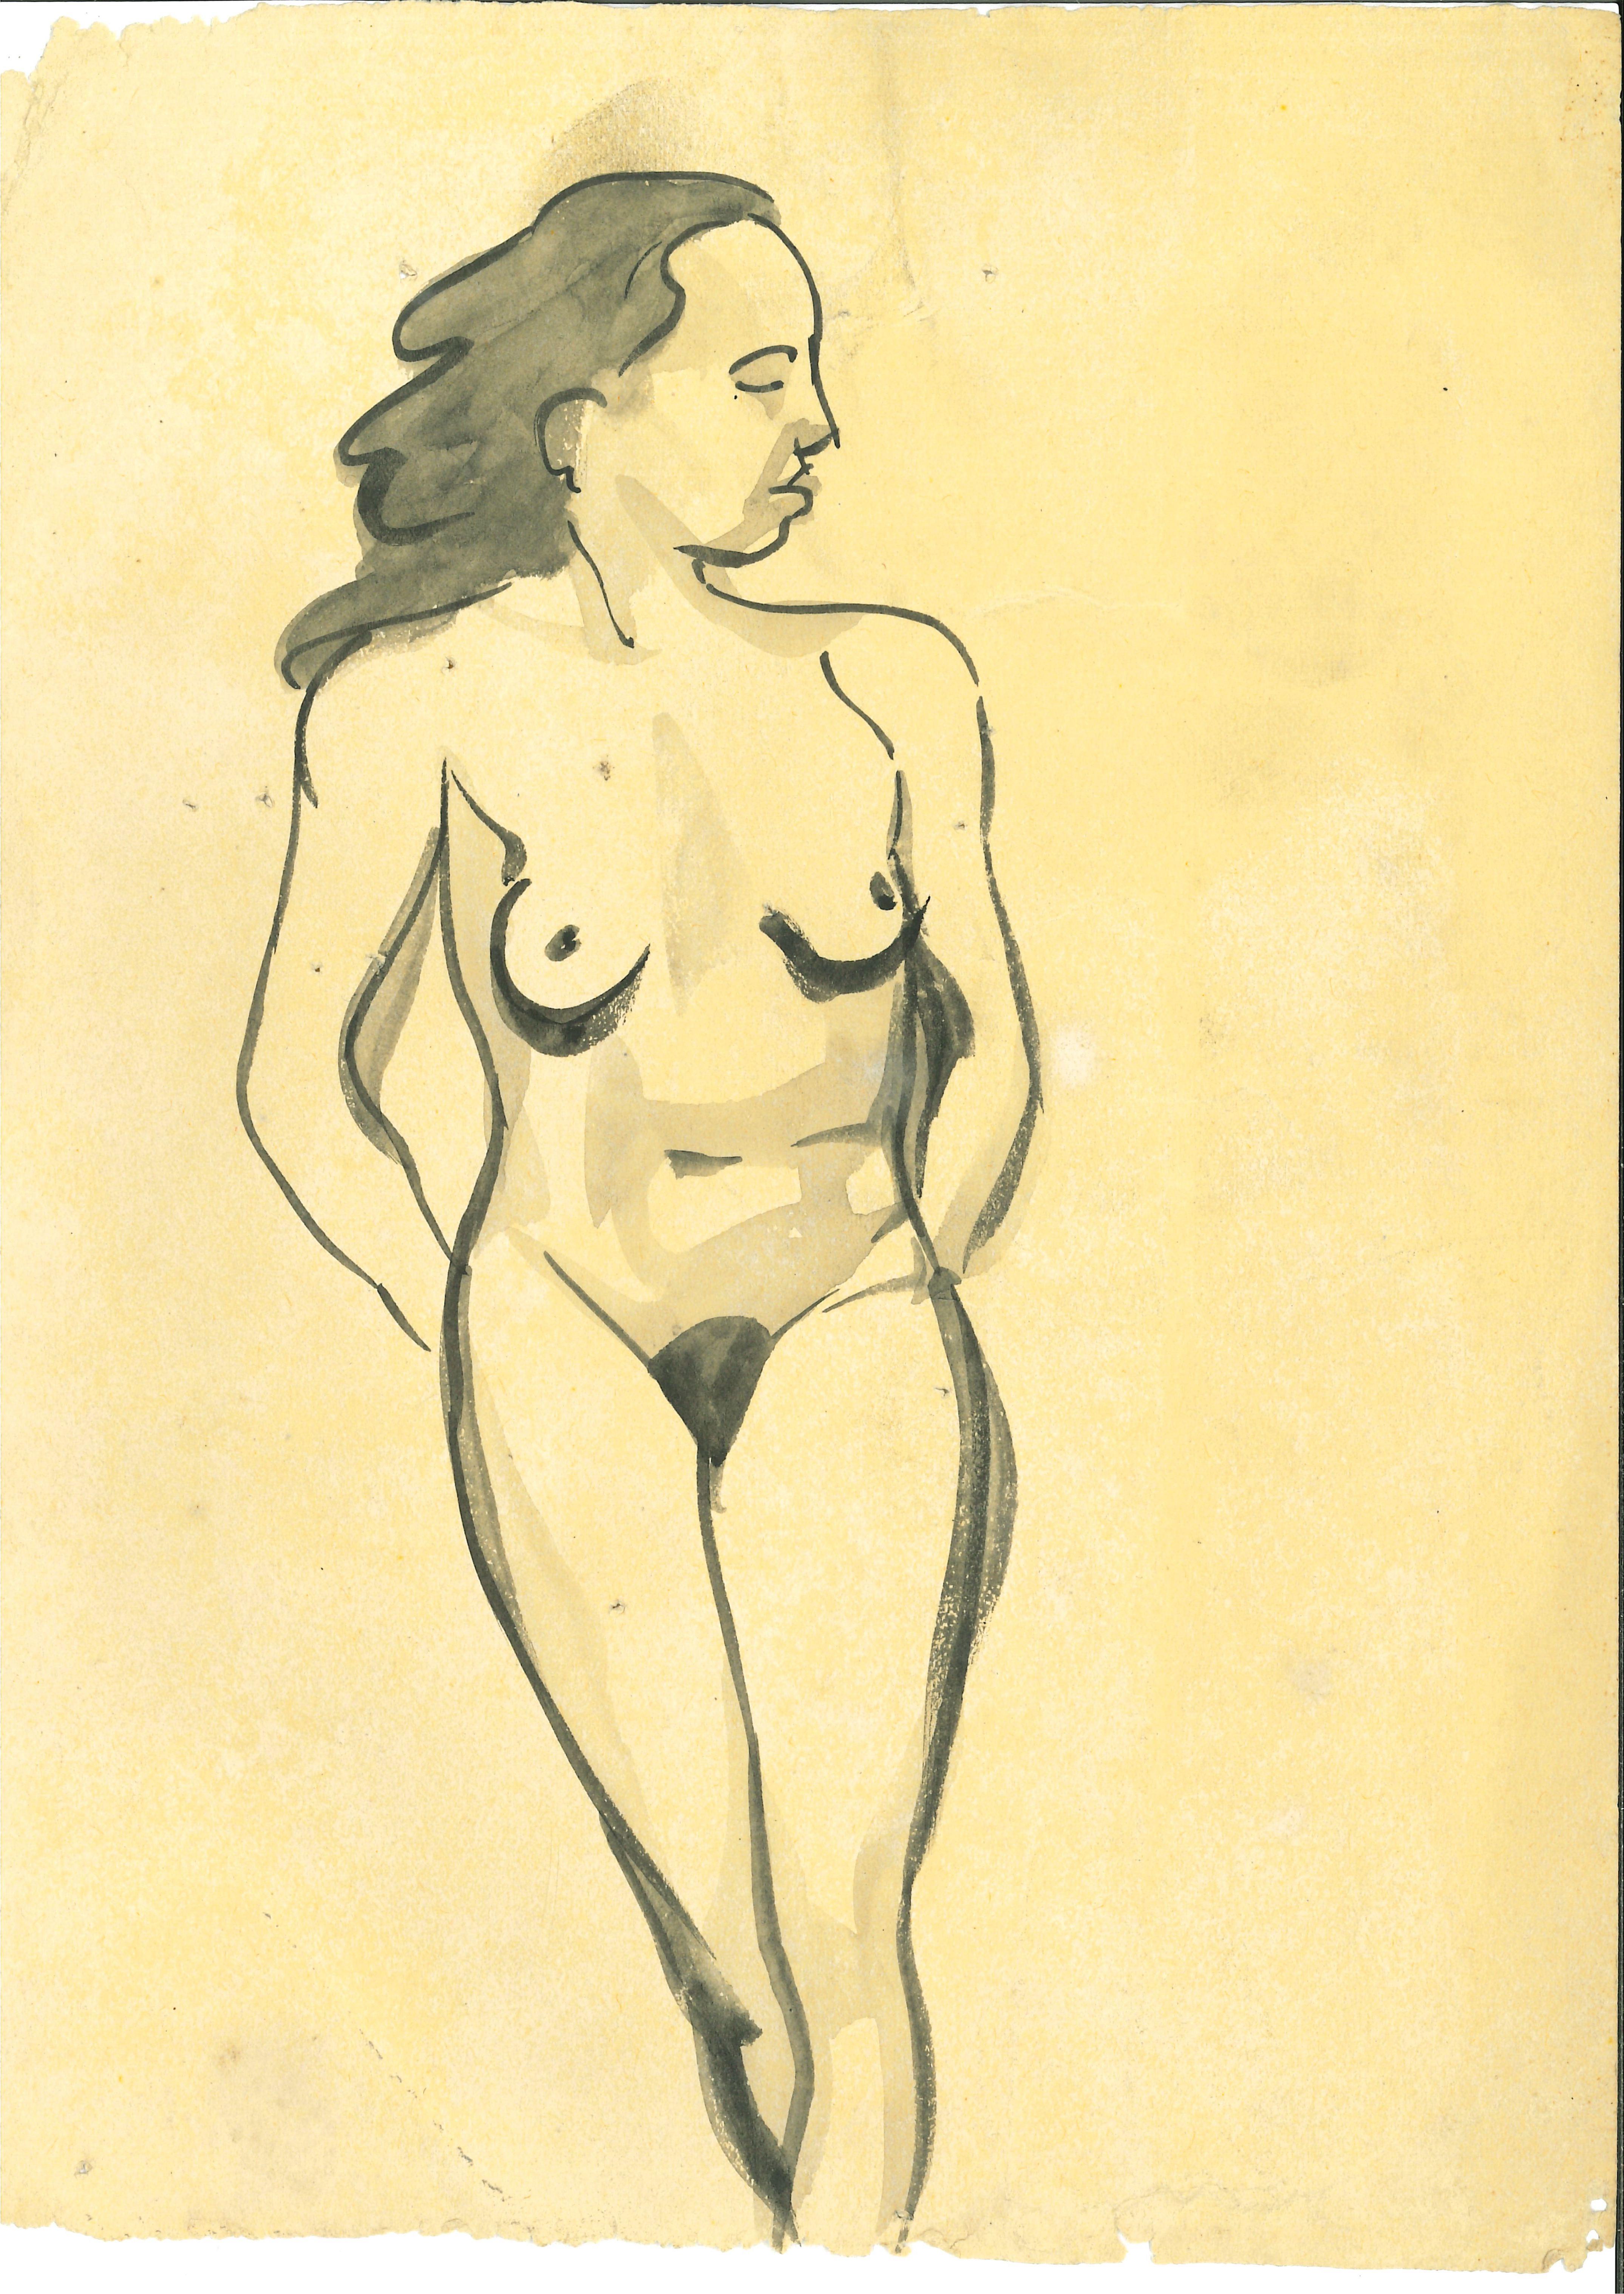 André Meaux Saint-Marc Figurative Art - Nude Woman - Original Pen and Watercolor by André MeauxSaint-Marc - 1900